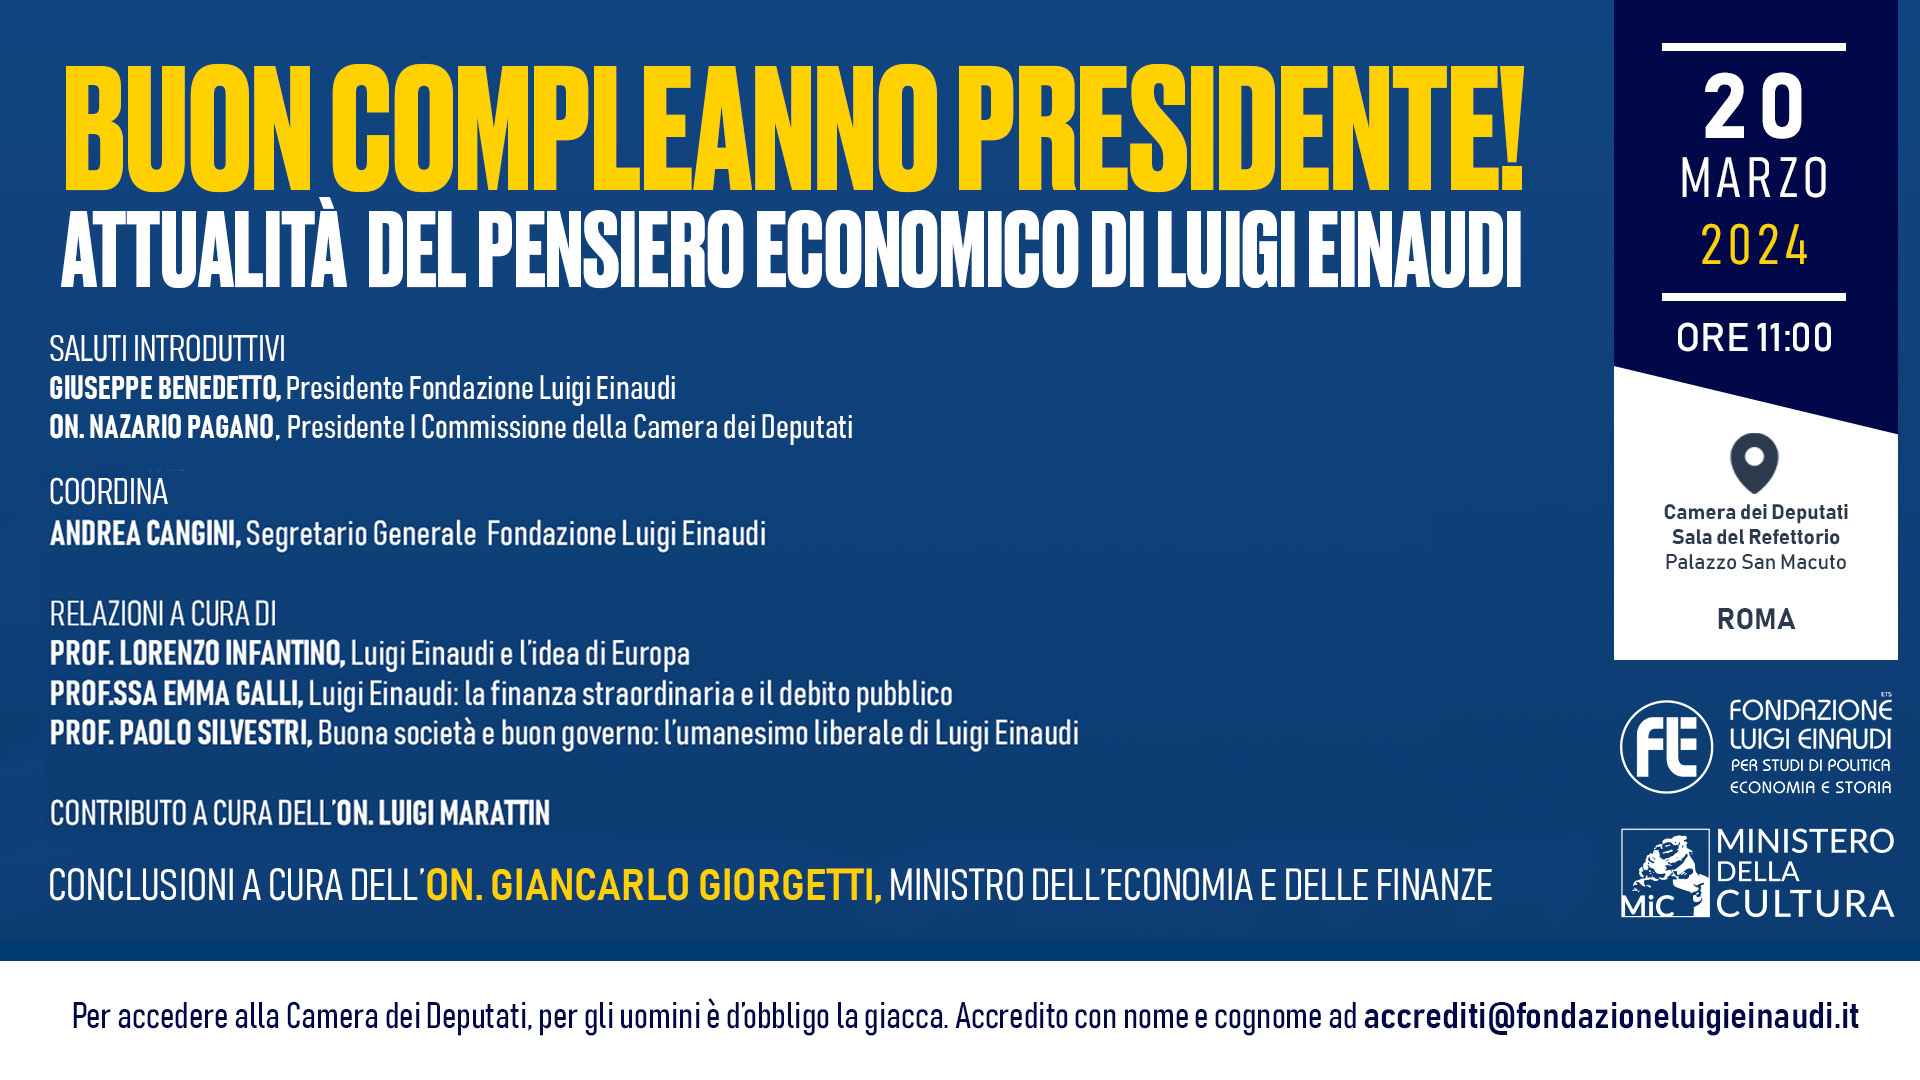 Buon compleanno Presidente! Attualità del pensiero economico di Luigi Einaudi